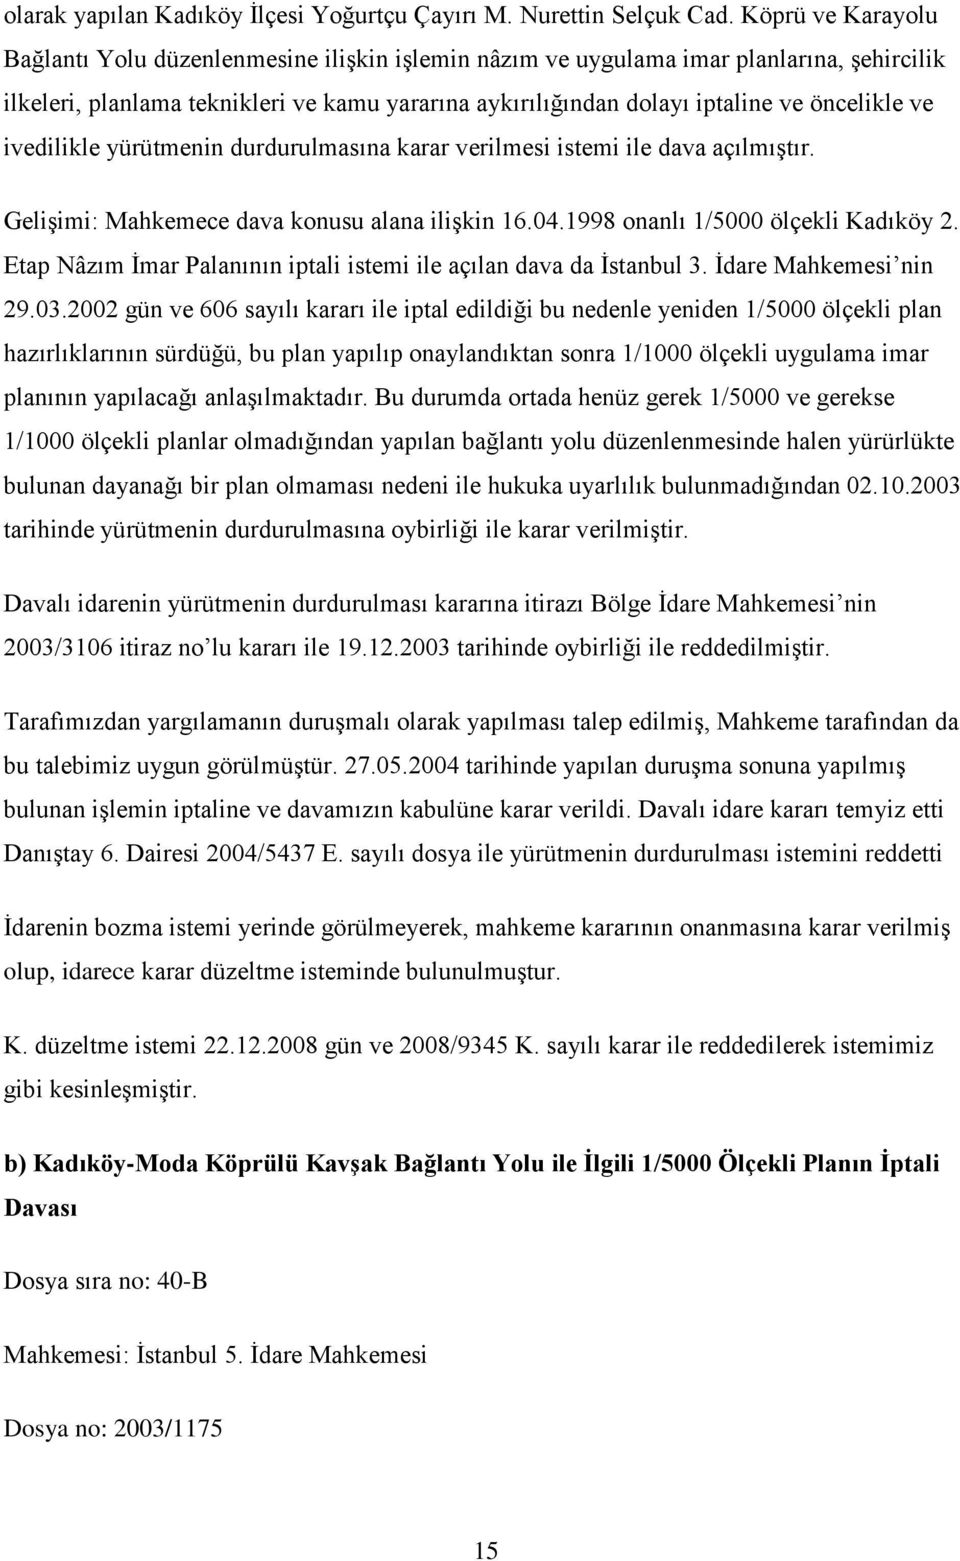 ve ivedilikle yürütmenin durdurulmasına karar verilmesi istemi ile dava açılmıştır. Gelişimi: Mahkemece dava konusu alana ilişkin 16.04.1998 onanlı 1/5000 ölçekli Kadıköy 2.